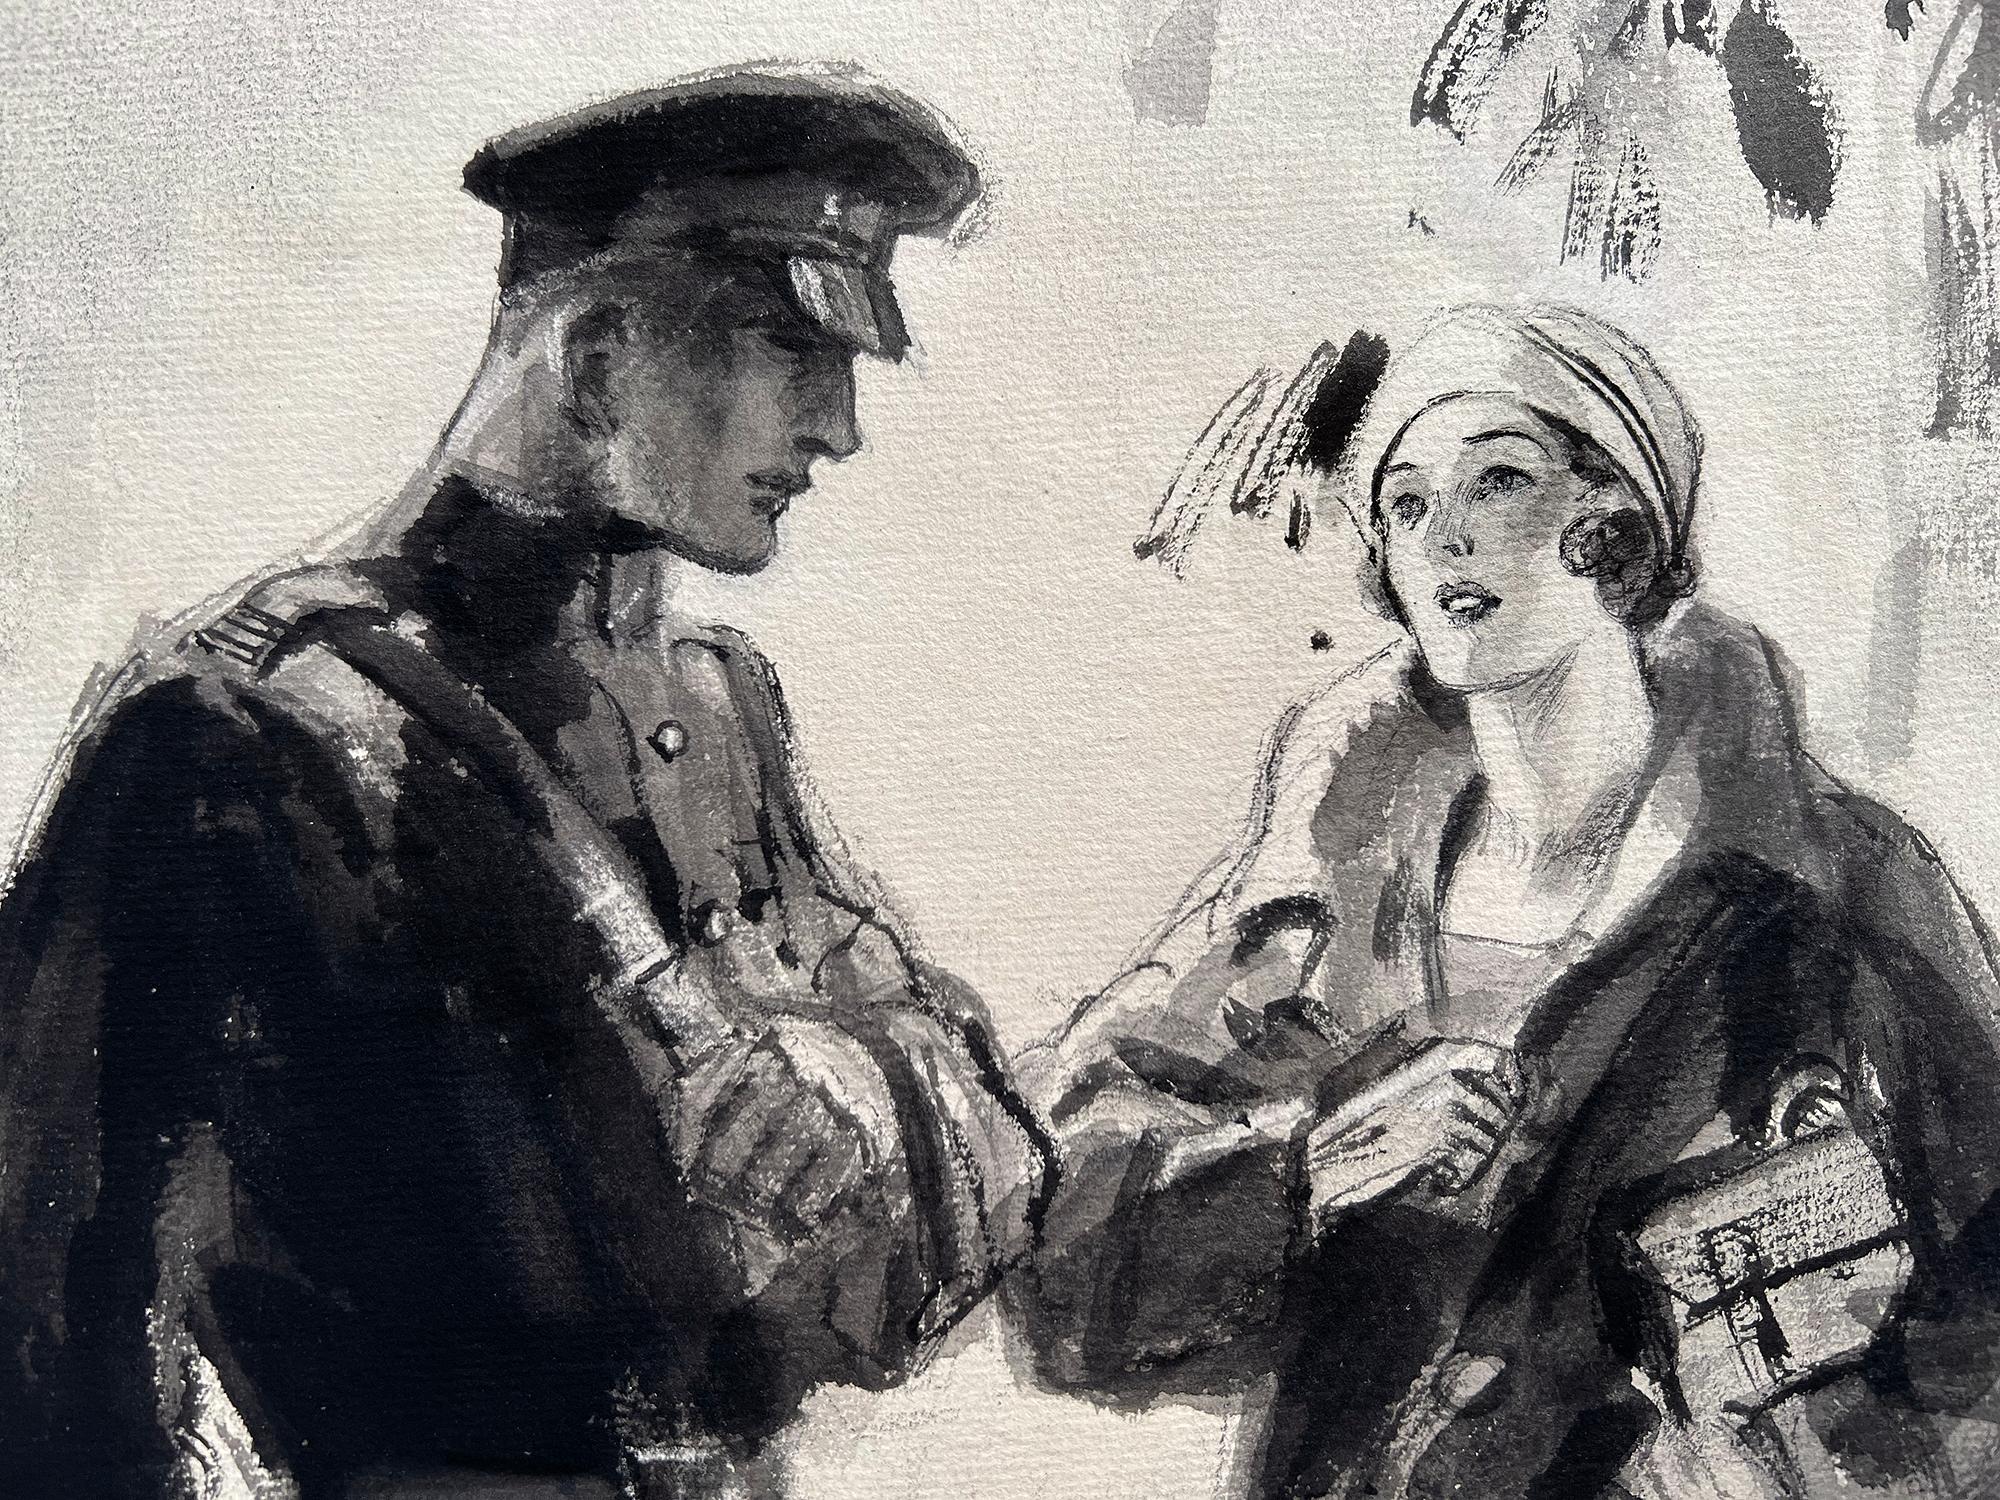 Technik und Thema passen gut zusammen in dieser lockeren, aber meisterhaft gestalteten romantischen Illustration aus dem Ersten Weltkrieg, die einen Soldaten und eine Pariserin zeigt.  Obwohl dieses Werk etwa 100 Jahre alt ist, hat es eine frische